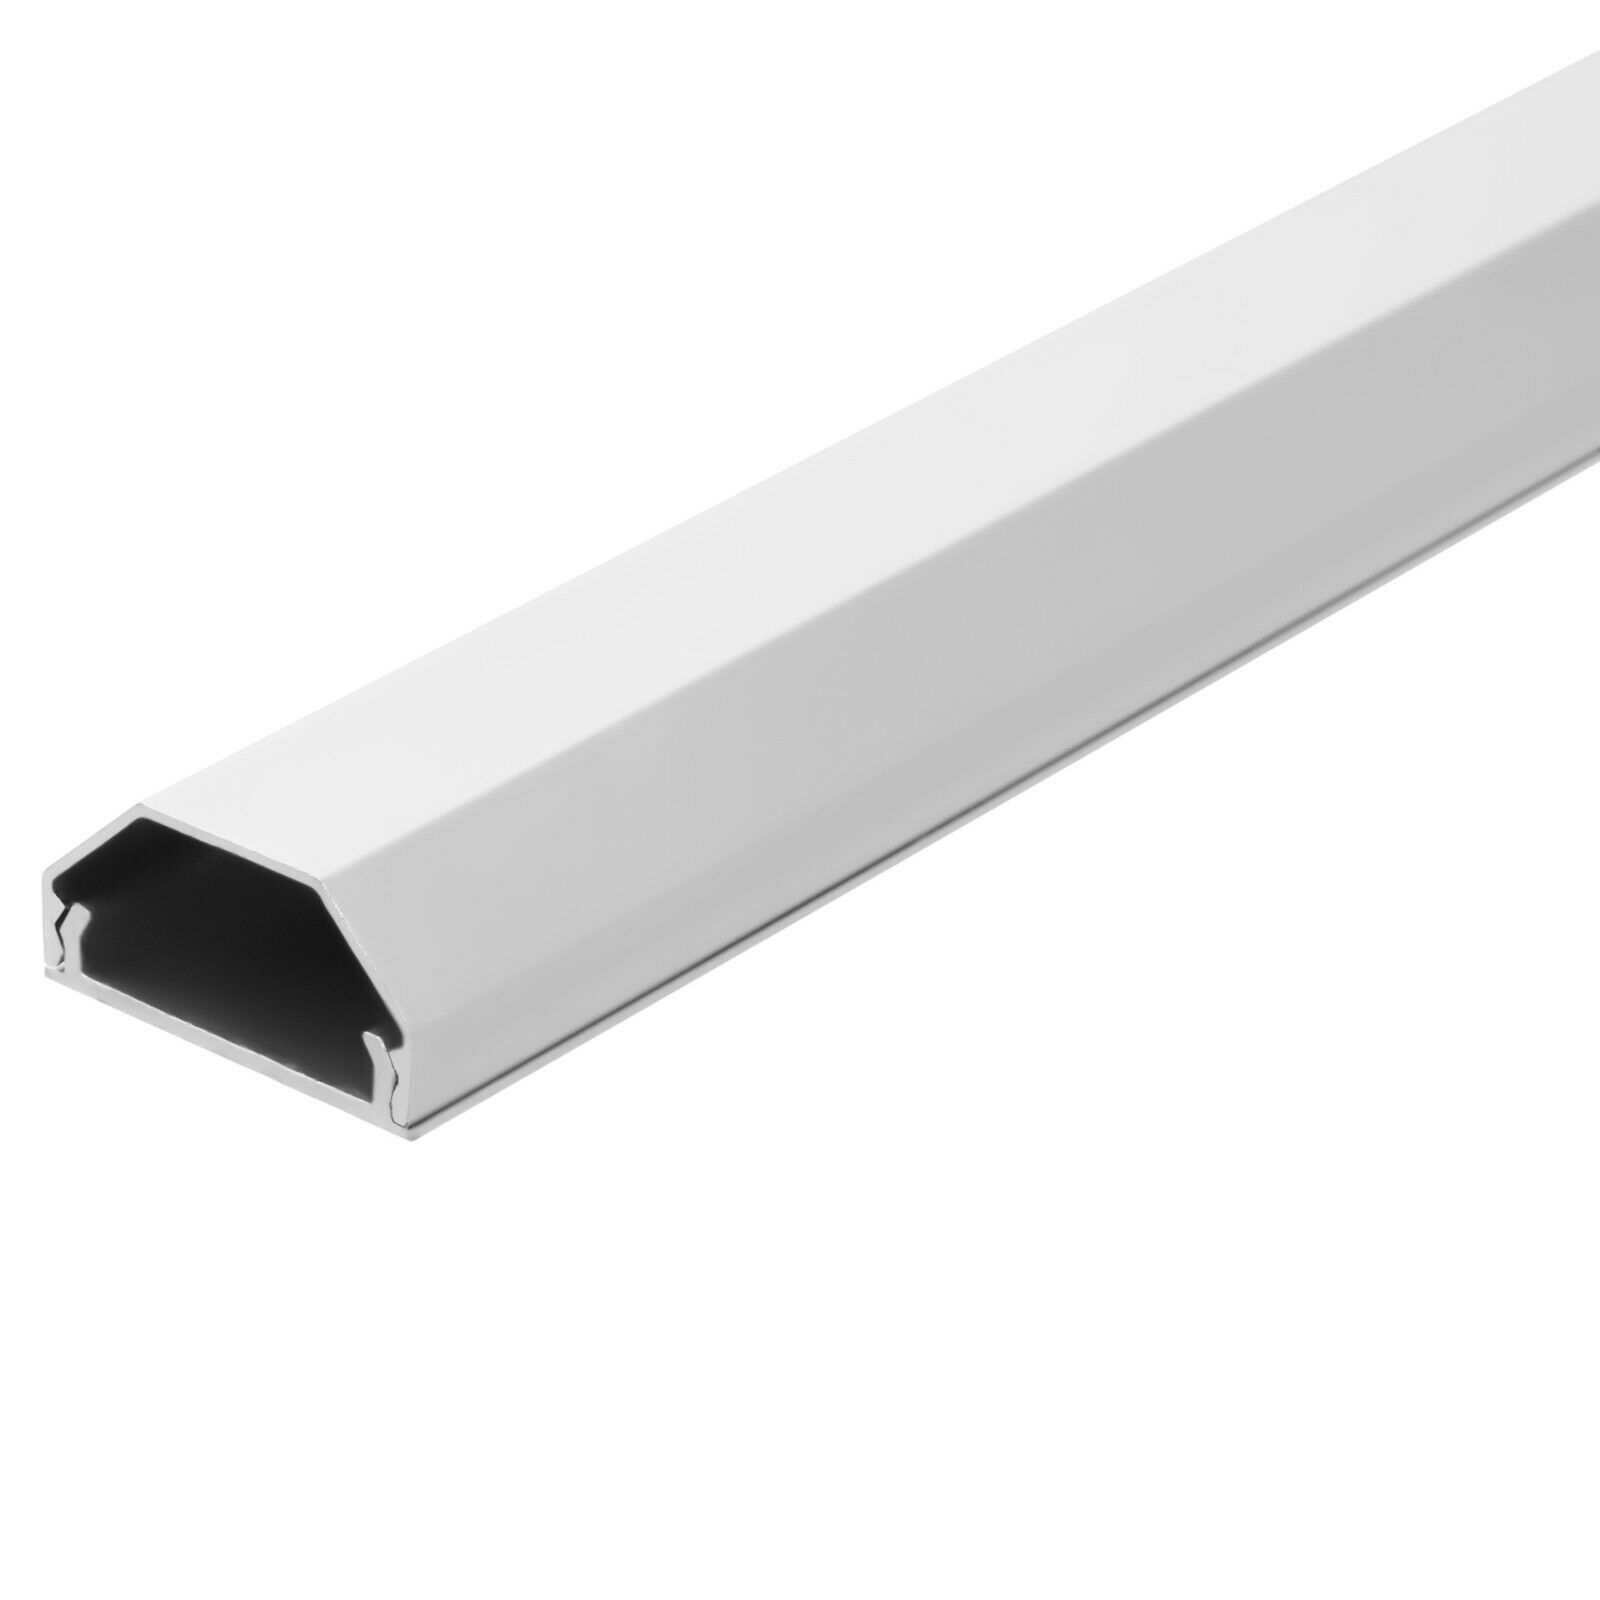 Hliníkový profil / kabelová lišta 75 cm 2. jakost Barva: Bílá, Samolepicí páska: Ano, Šířka profilu: 50 mm